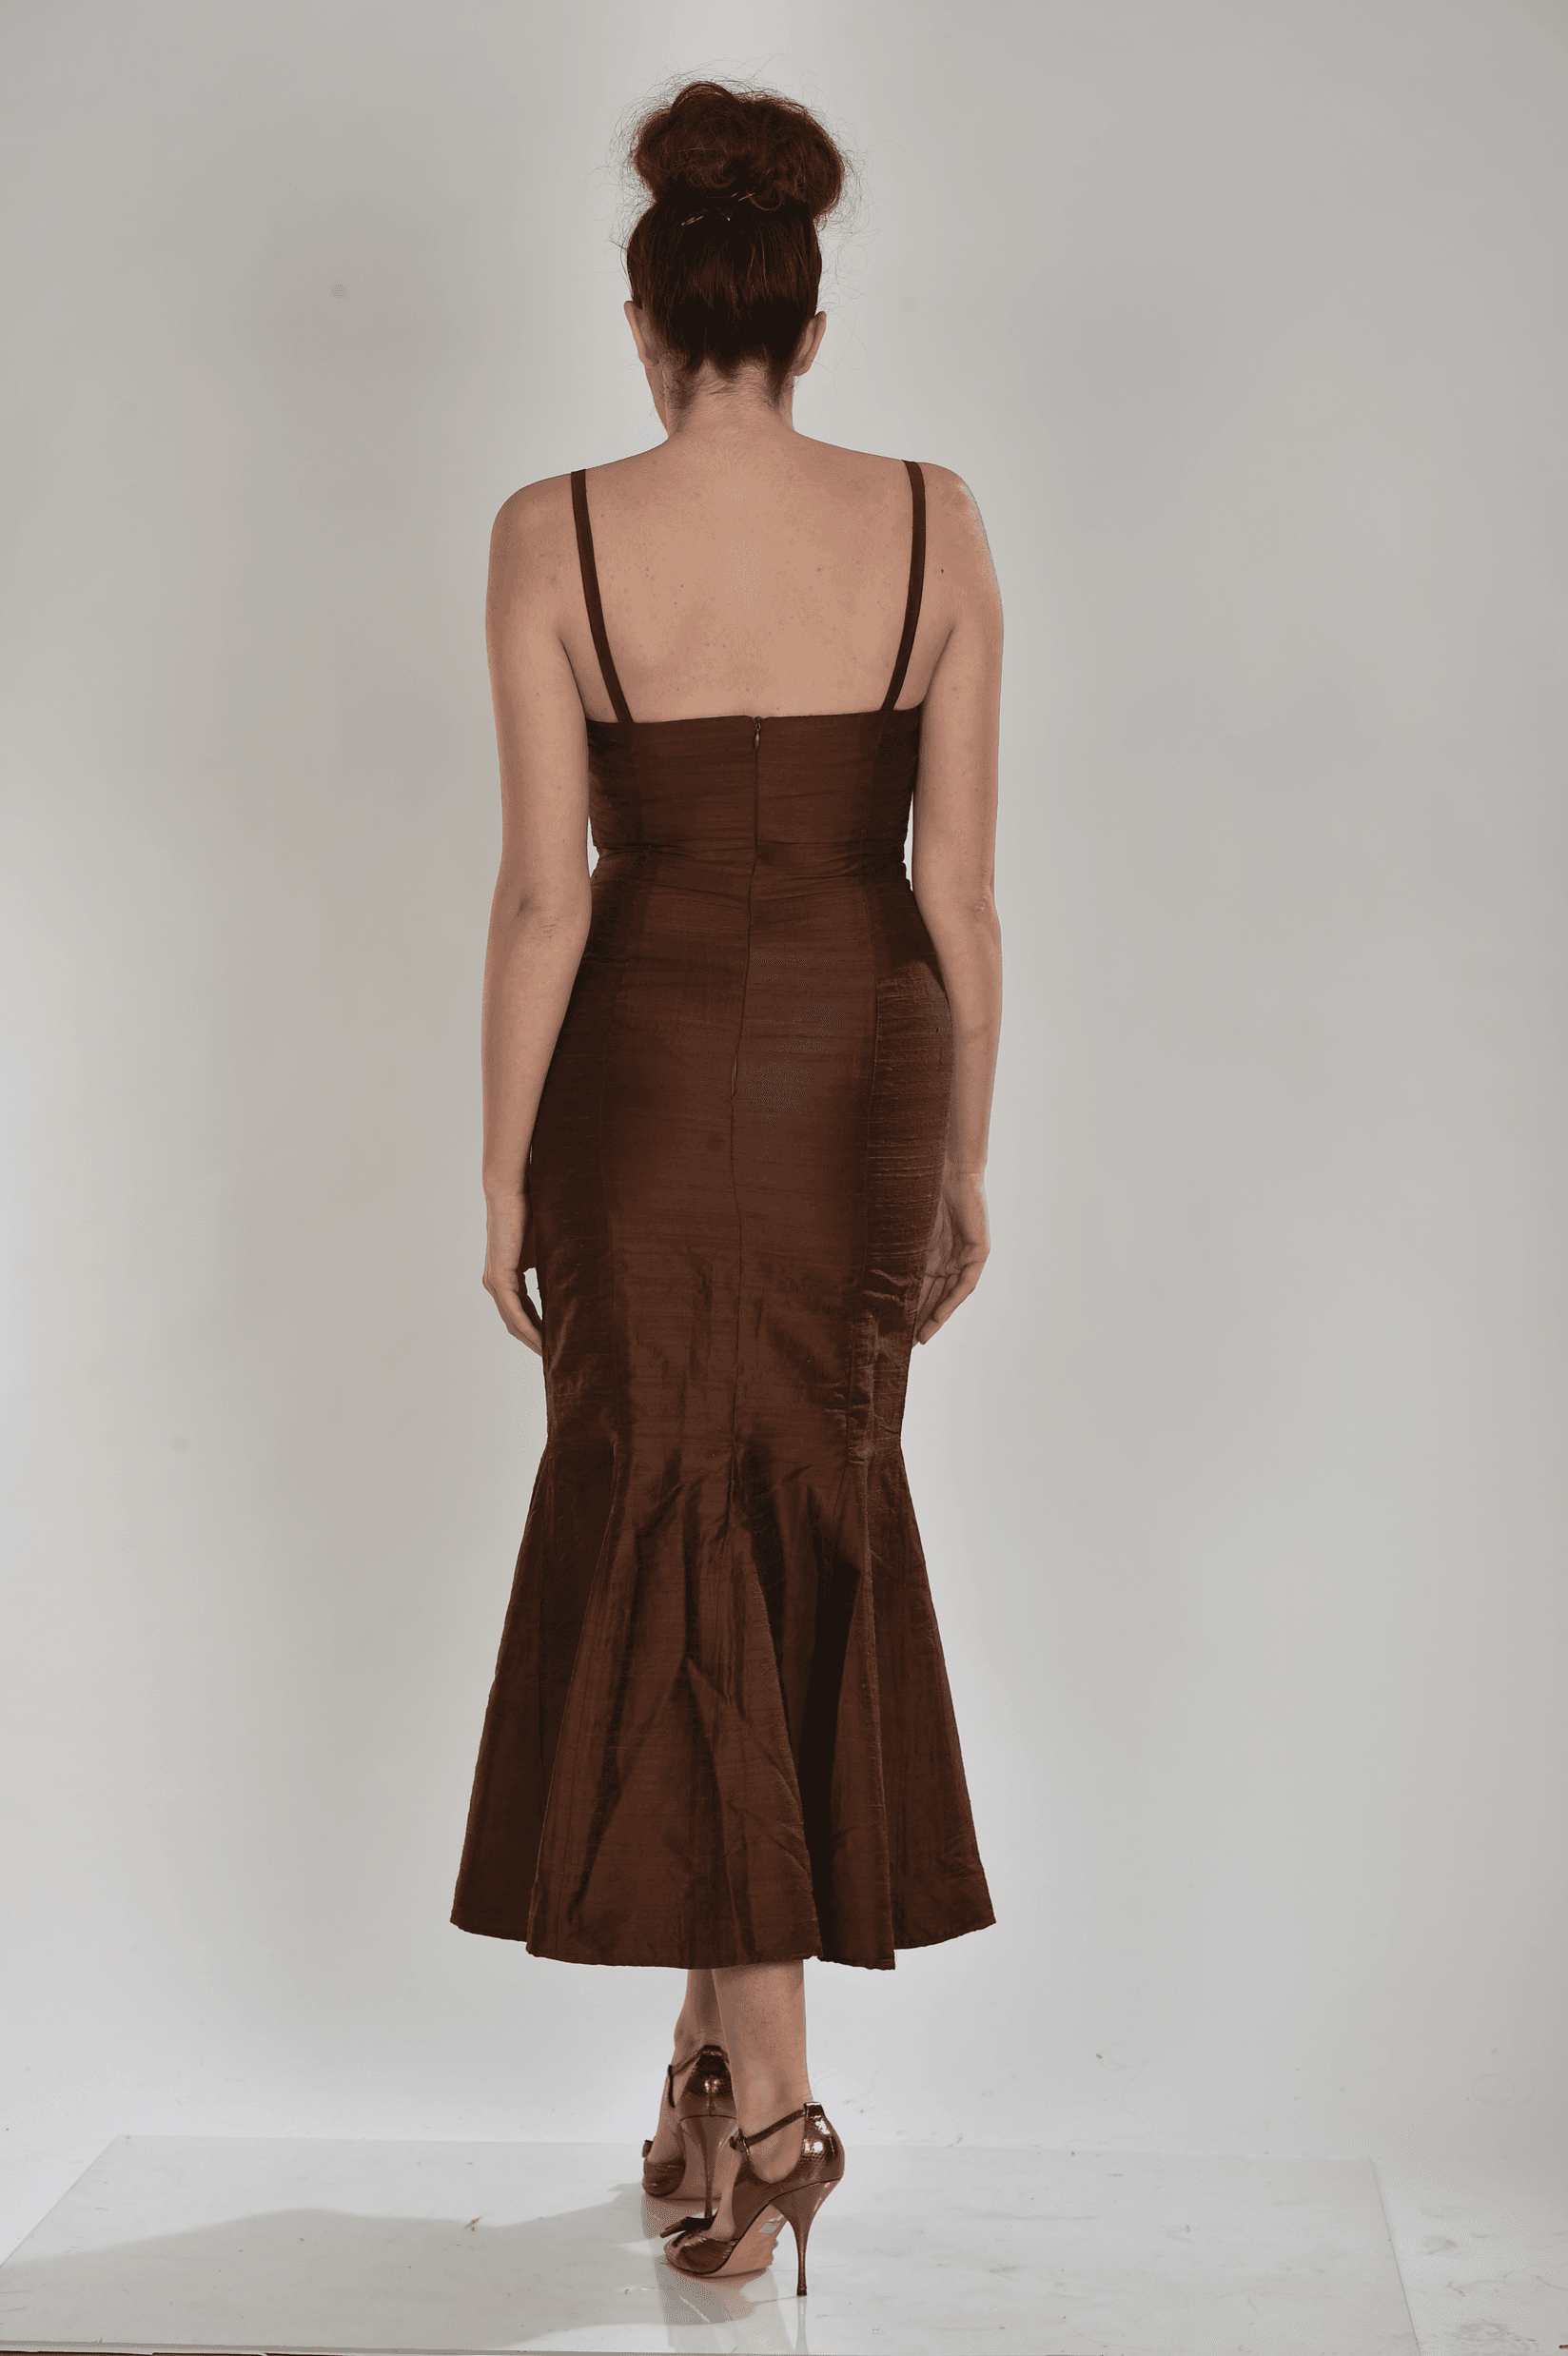 Selected image for ISKON MODE Ženska svilena unikatna haljina braon